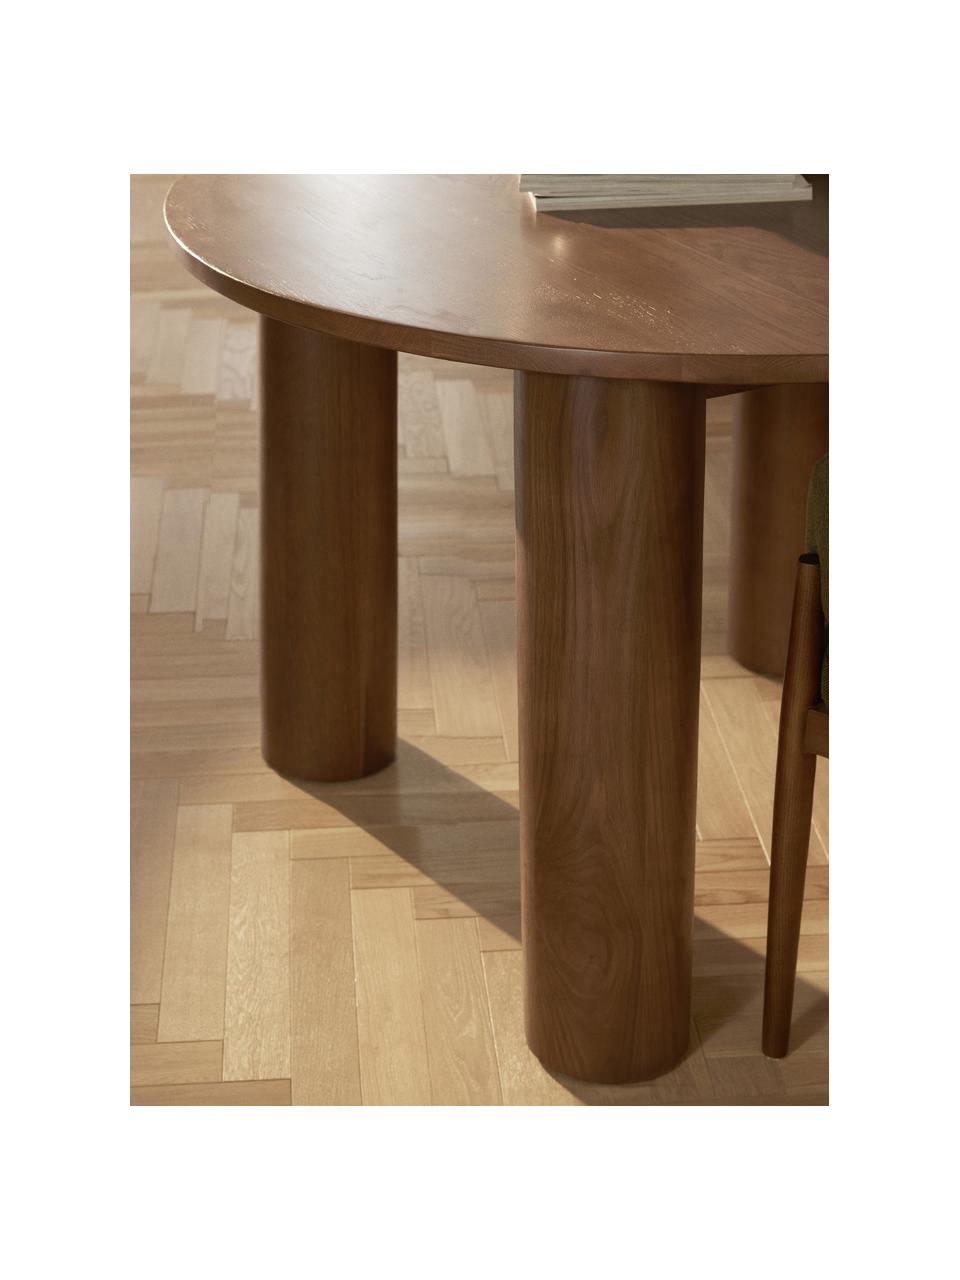 Table ronde en chêne Ohana, Ø 120 cm, Bois de chêne huilé

Ce produit est fabriqué à partir de bois certifié FSC® issu d'une exploitation durable, Chêne brun huilé, Ø 120 cm